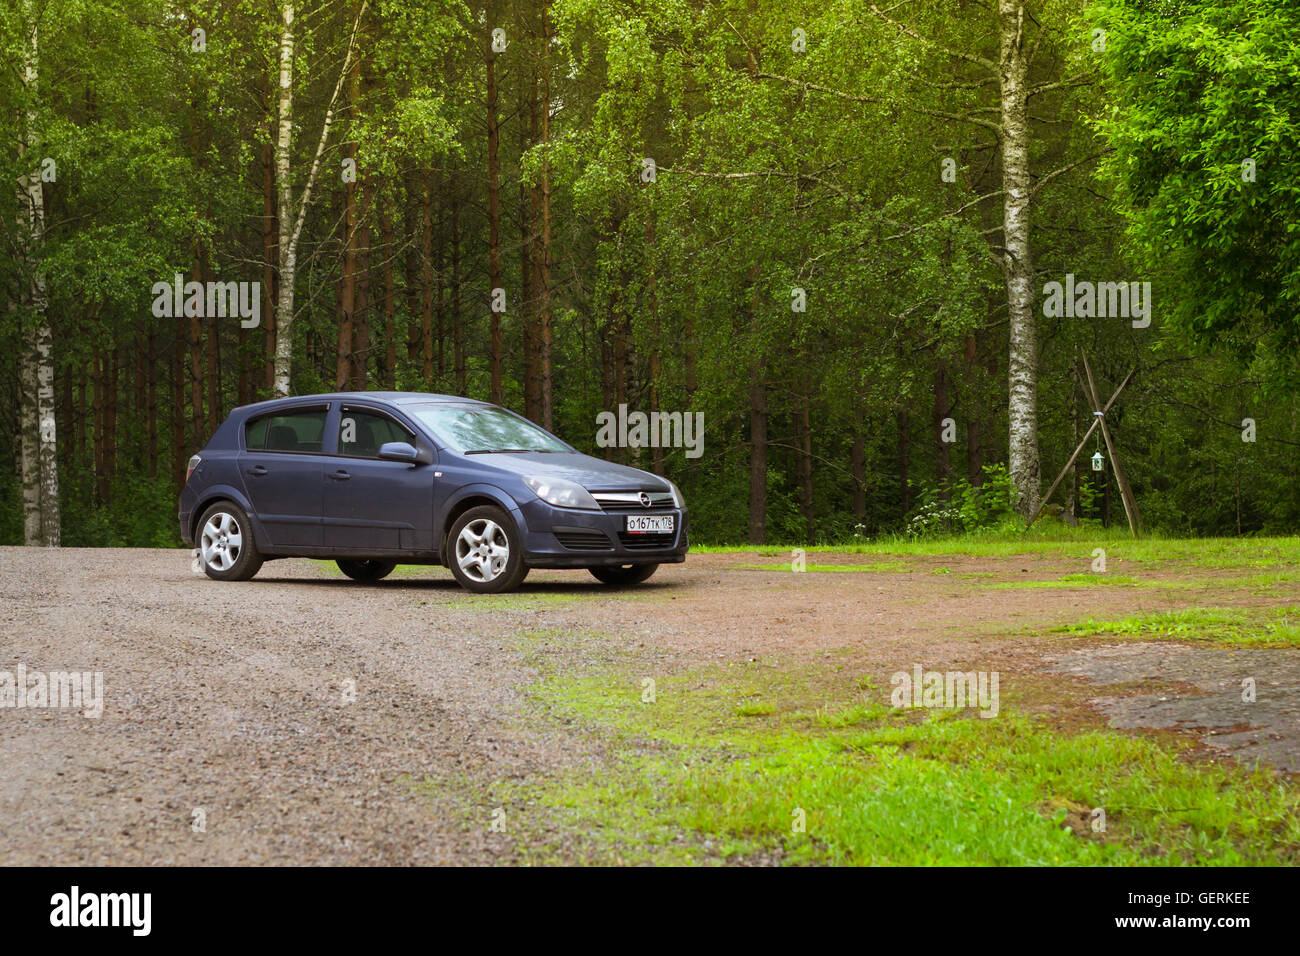 LAPPEENRANTA, FINLANDE - le 13 juin 2014 : les loisirs de plein air d'été, en vacances scandinaves maison sur roues. Opel Astra bleu-foncé Banque D'Images